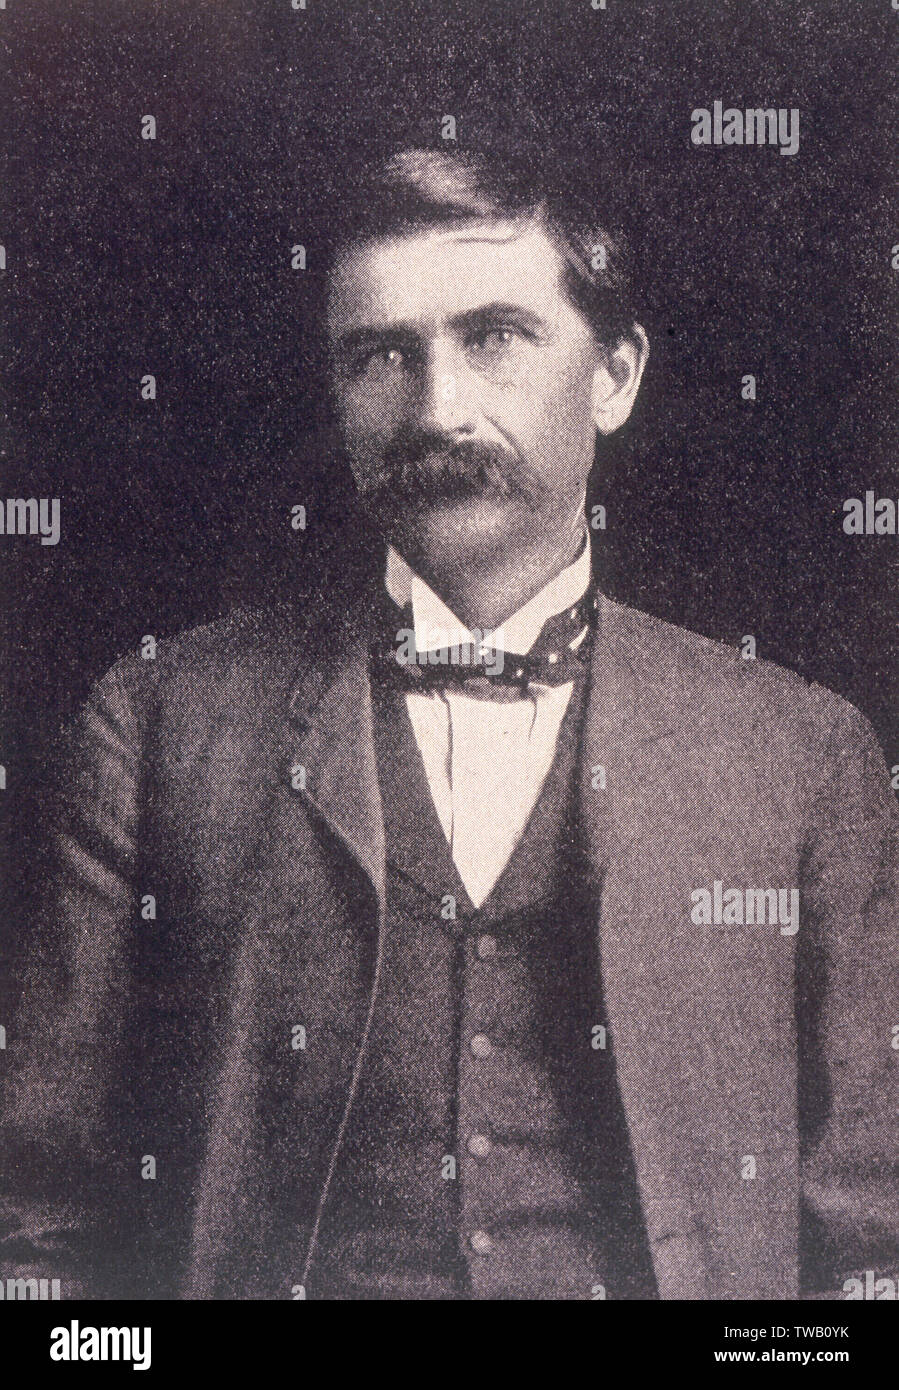 Patrick (Pat) Floyd Garrett (1850-1908), American lawman, Sheriff, barman et l'agent des douanes qui, dans environ 1881, tué Billy the Kid. Date : fin du 19e siècle Banque D'Images